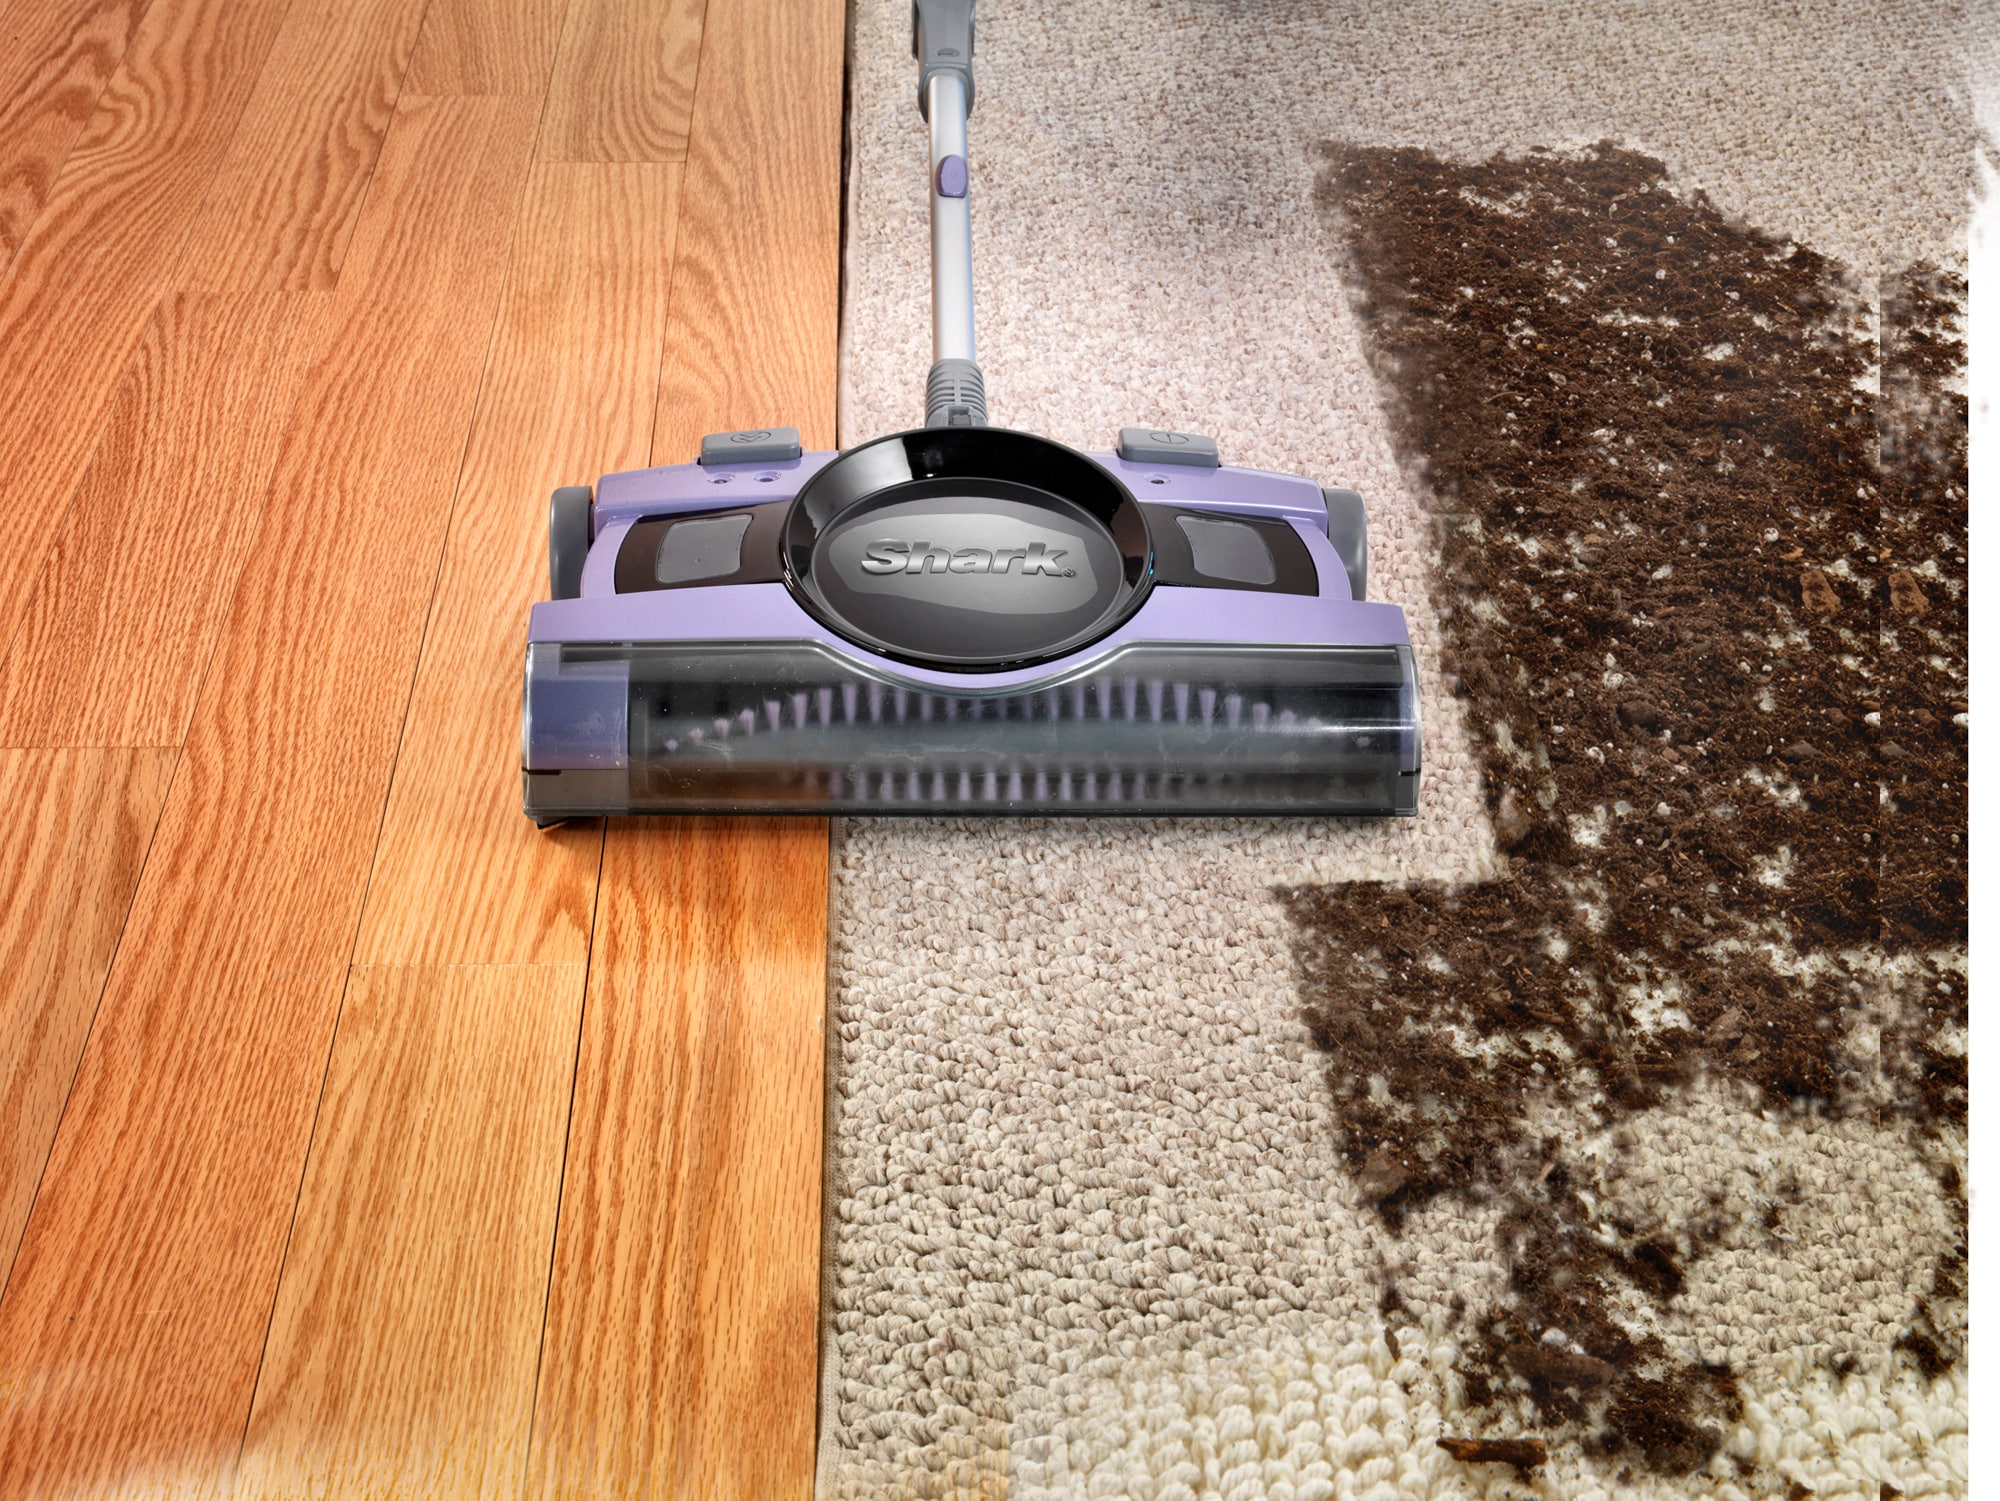  Shark 12inch Rechargeable Floor & Carpet Sweeper, V2945Z